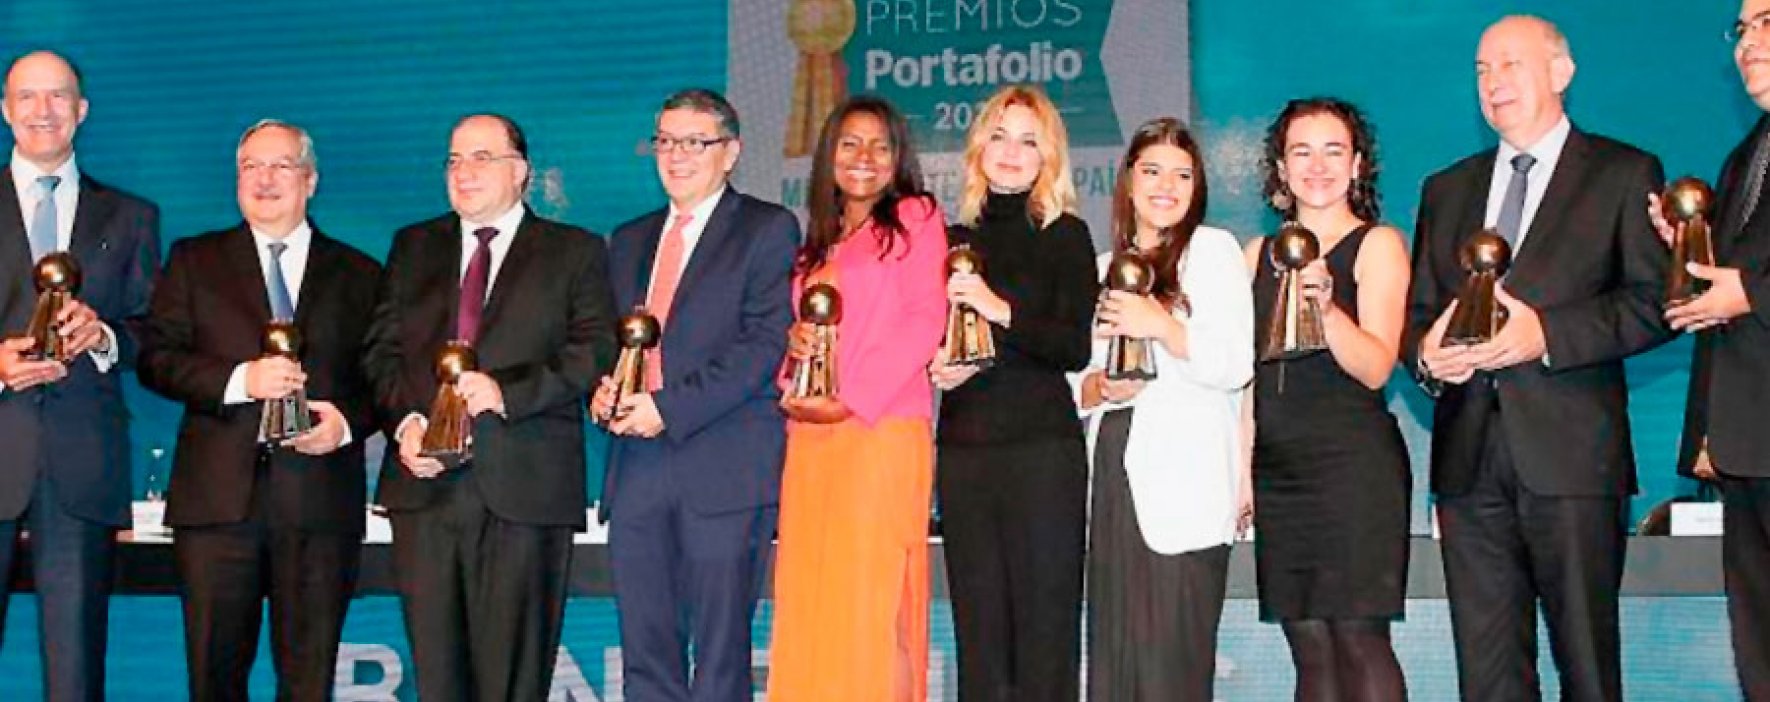 Smurfit Kappa gana el Premio Portafolio en Responsabilidad Social Empresarial